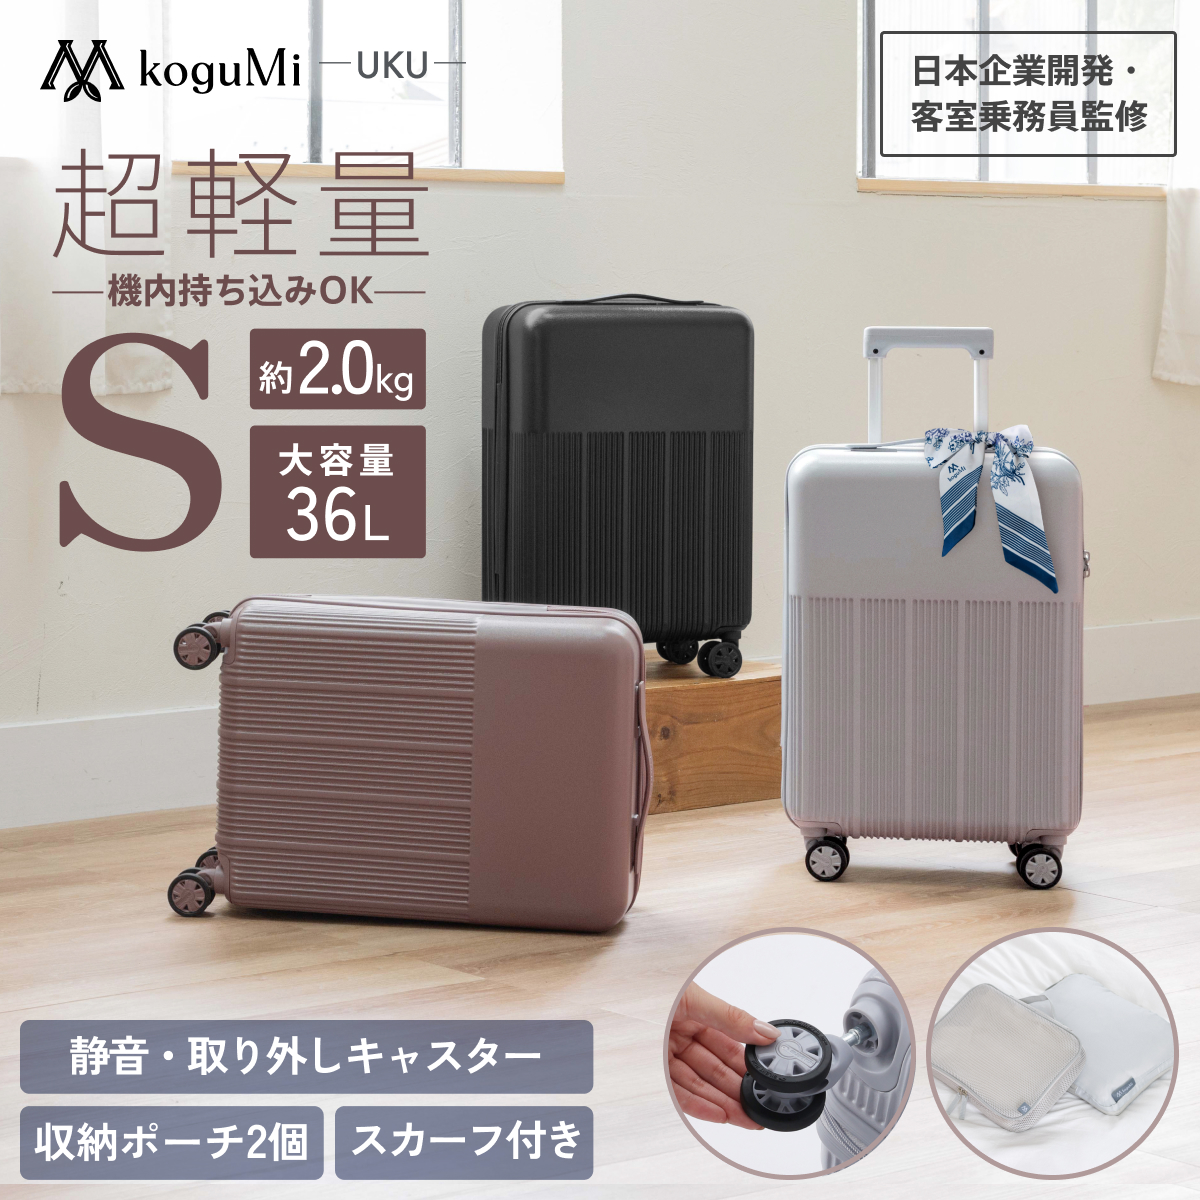 koguMi スーツケース UKU Sサイズ RPO素材 超軽量2.0kg 日本企業 